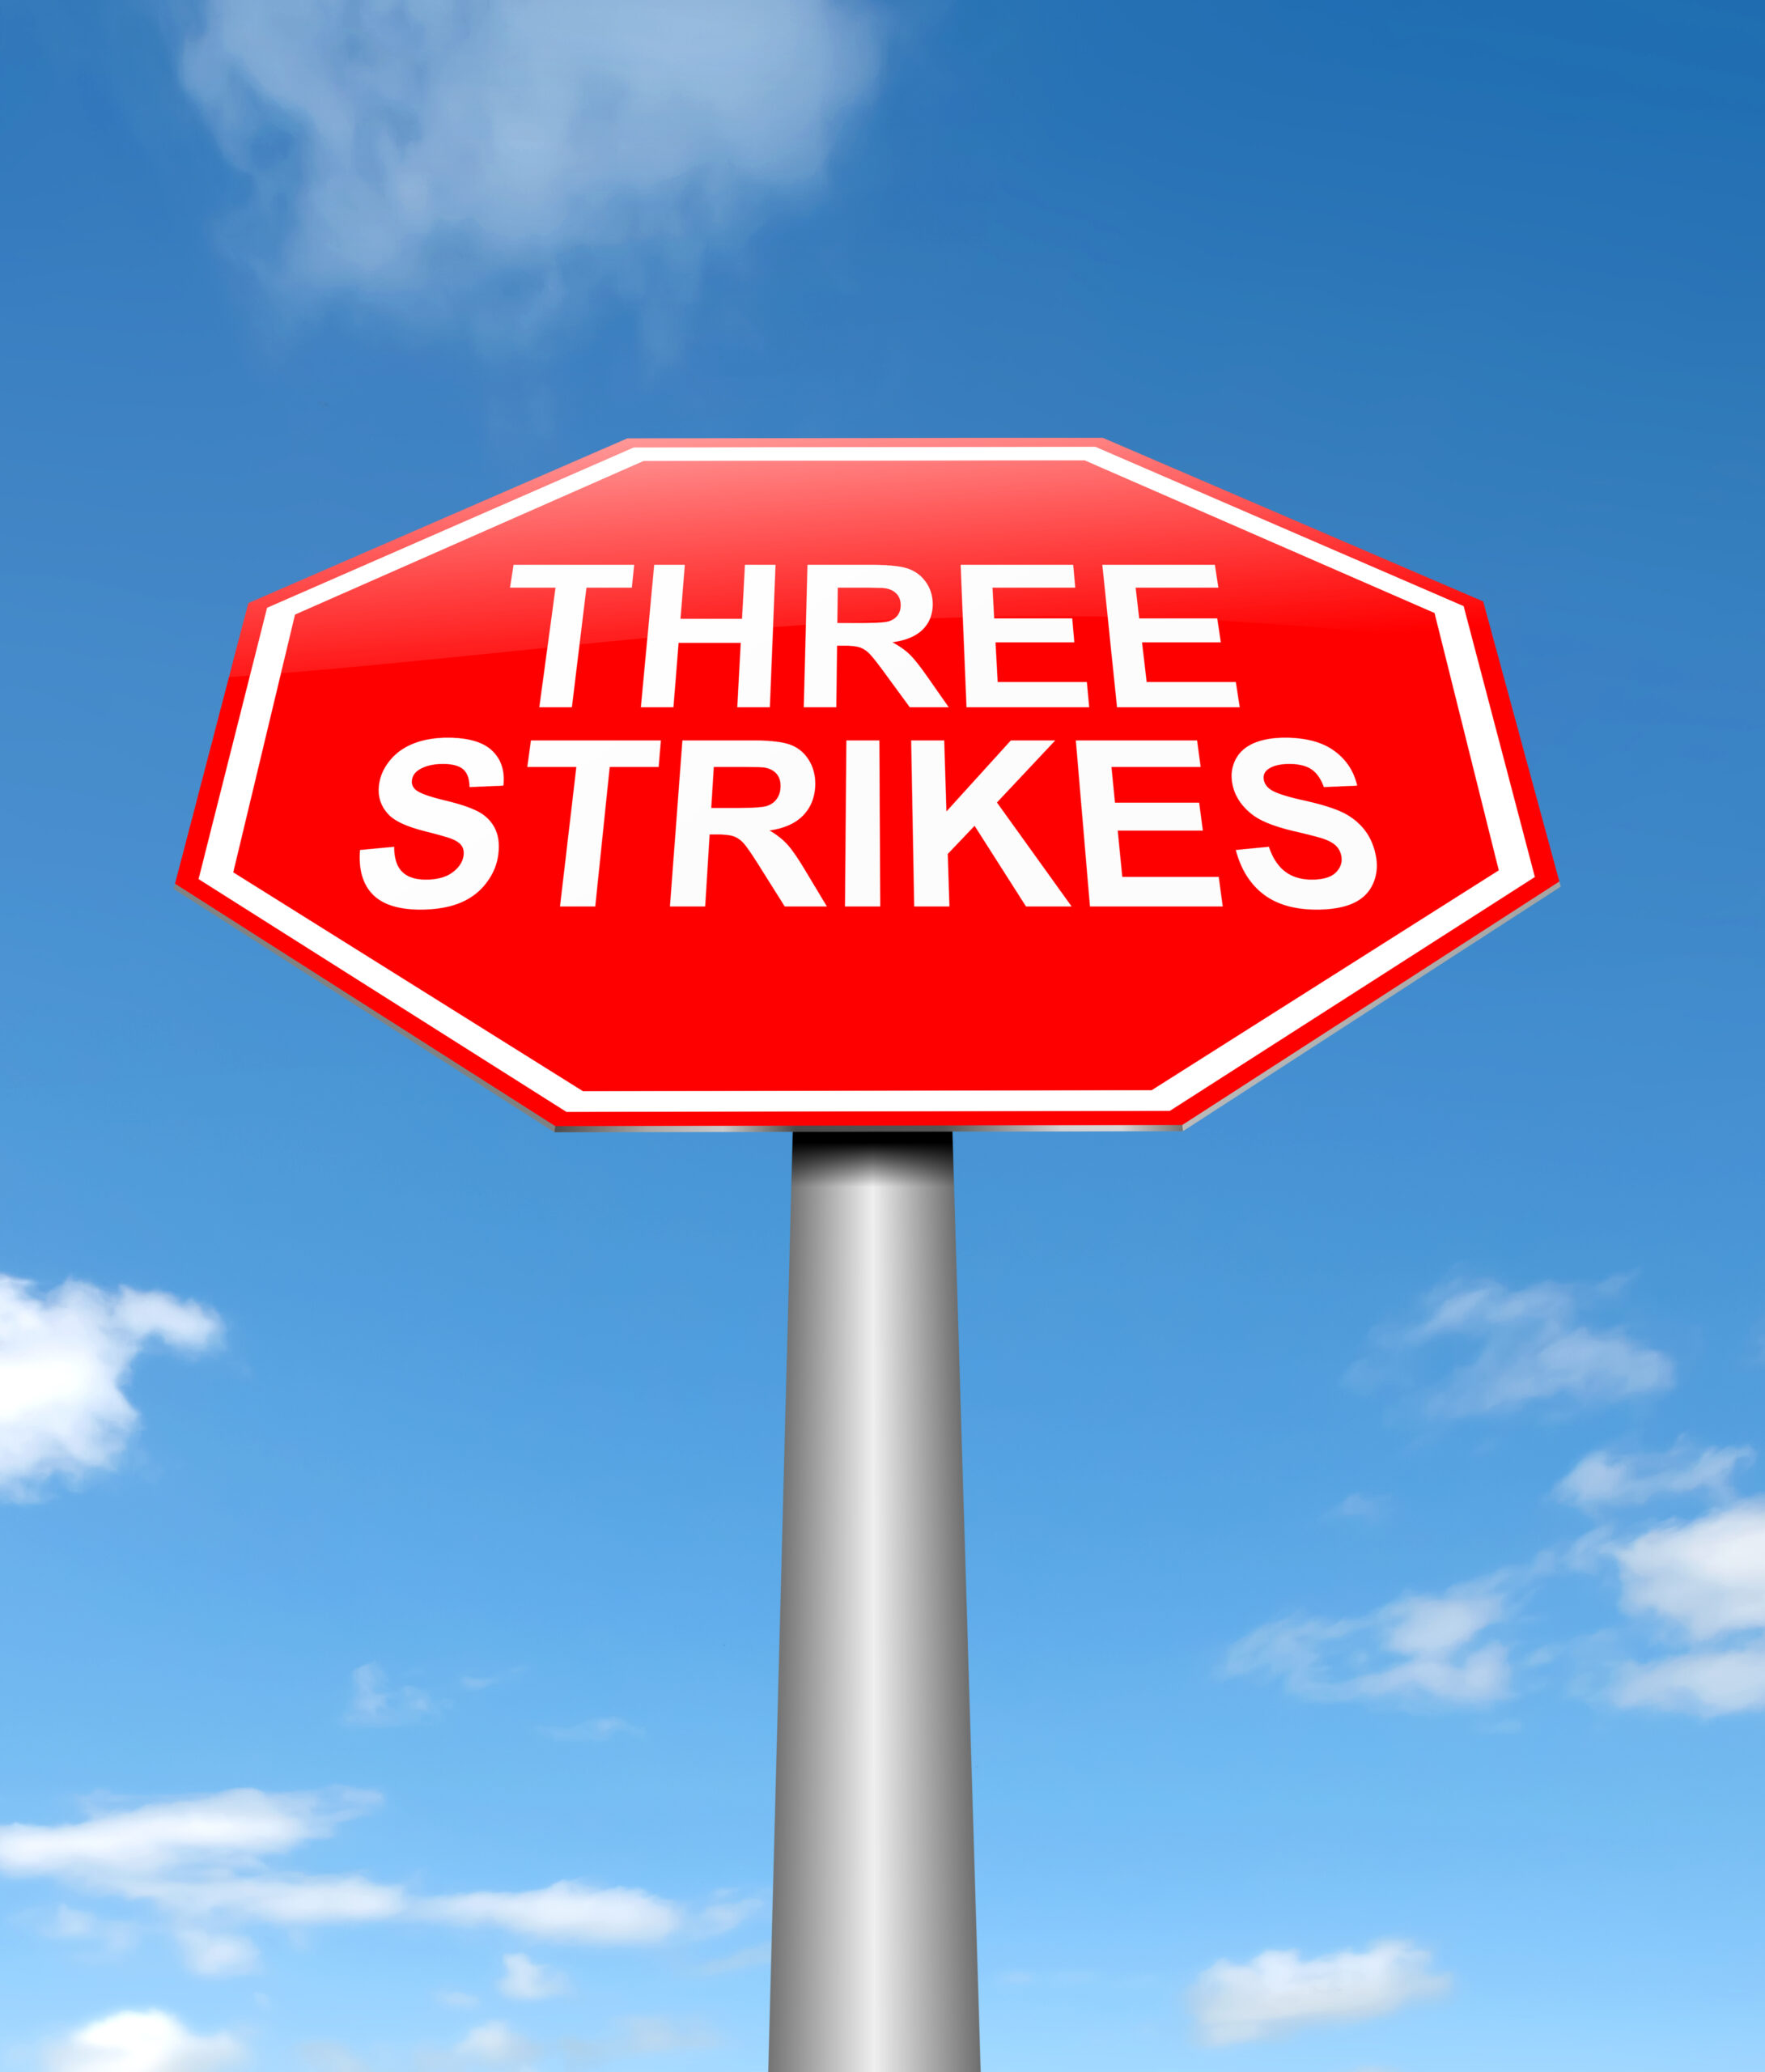 Three Strikes Laws